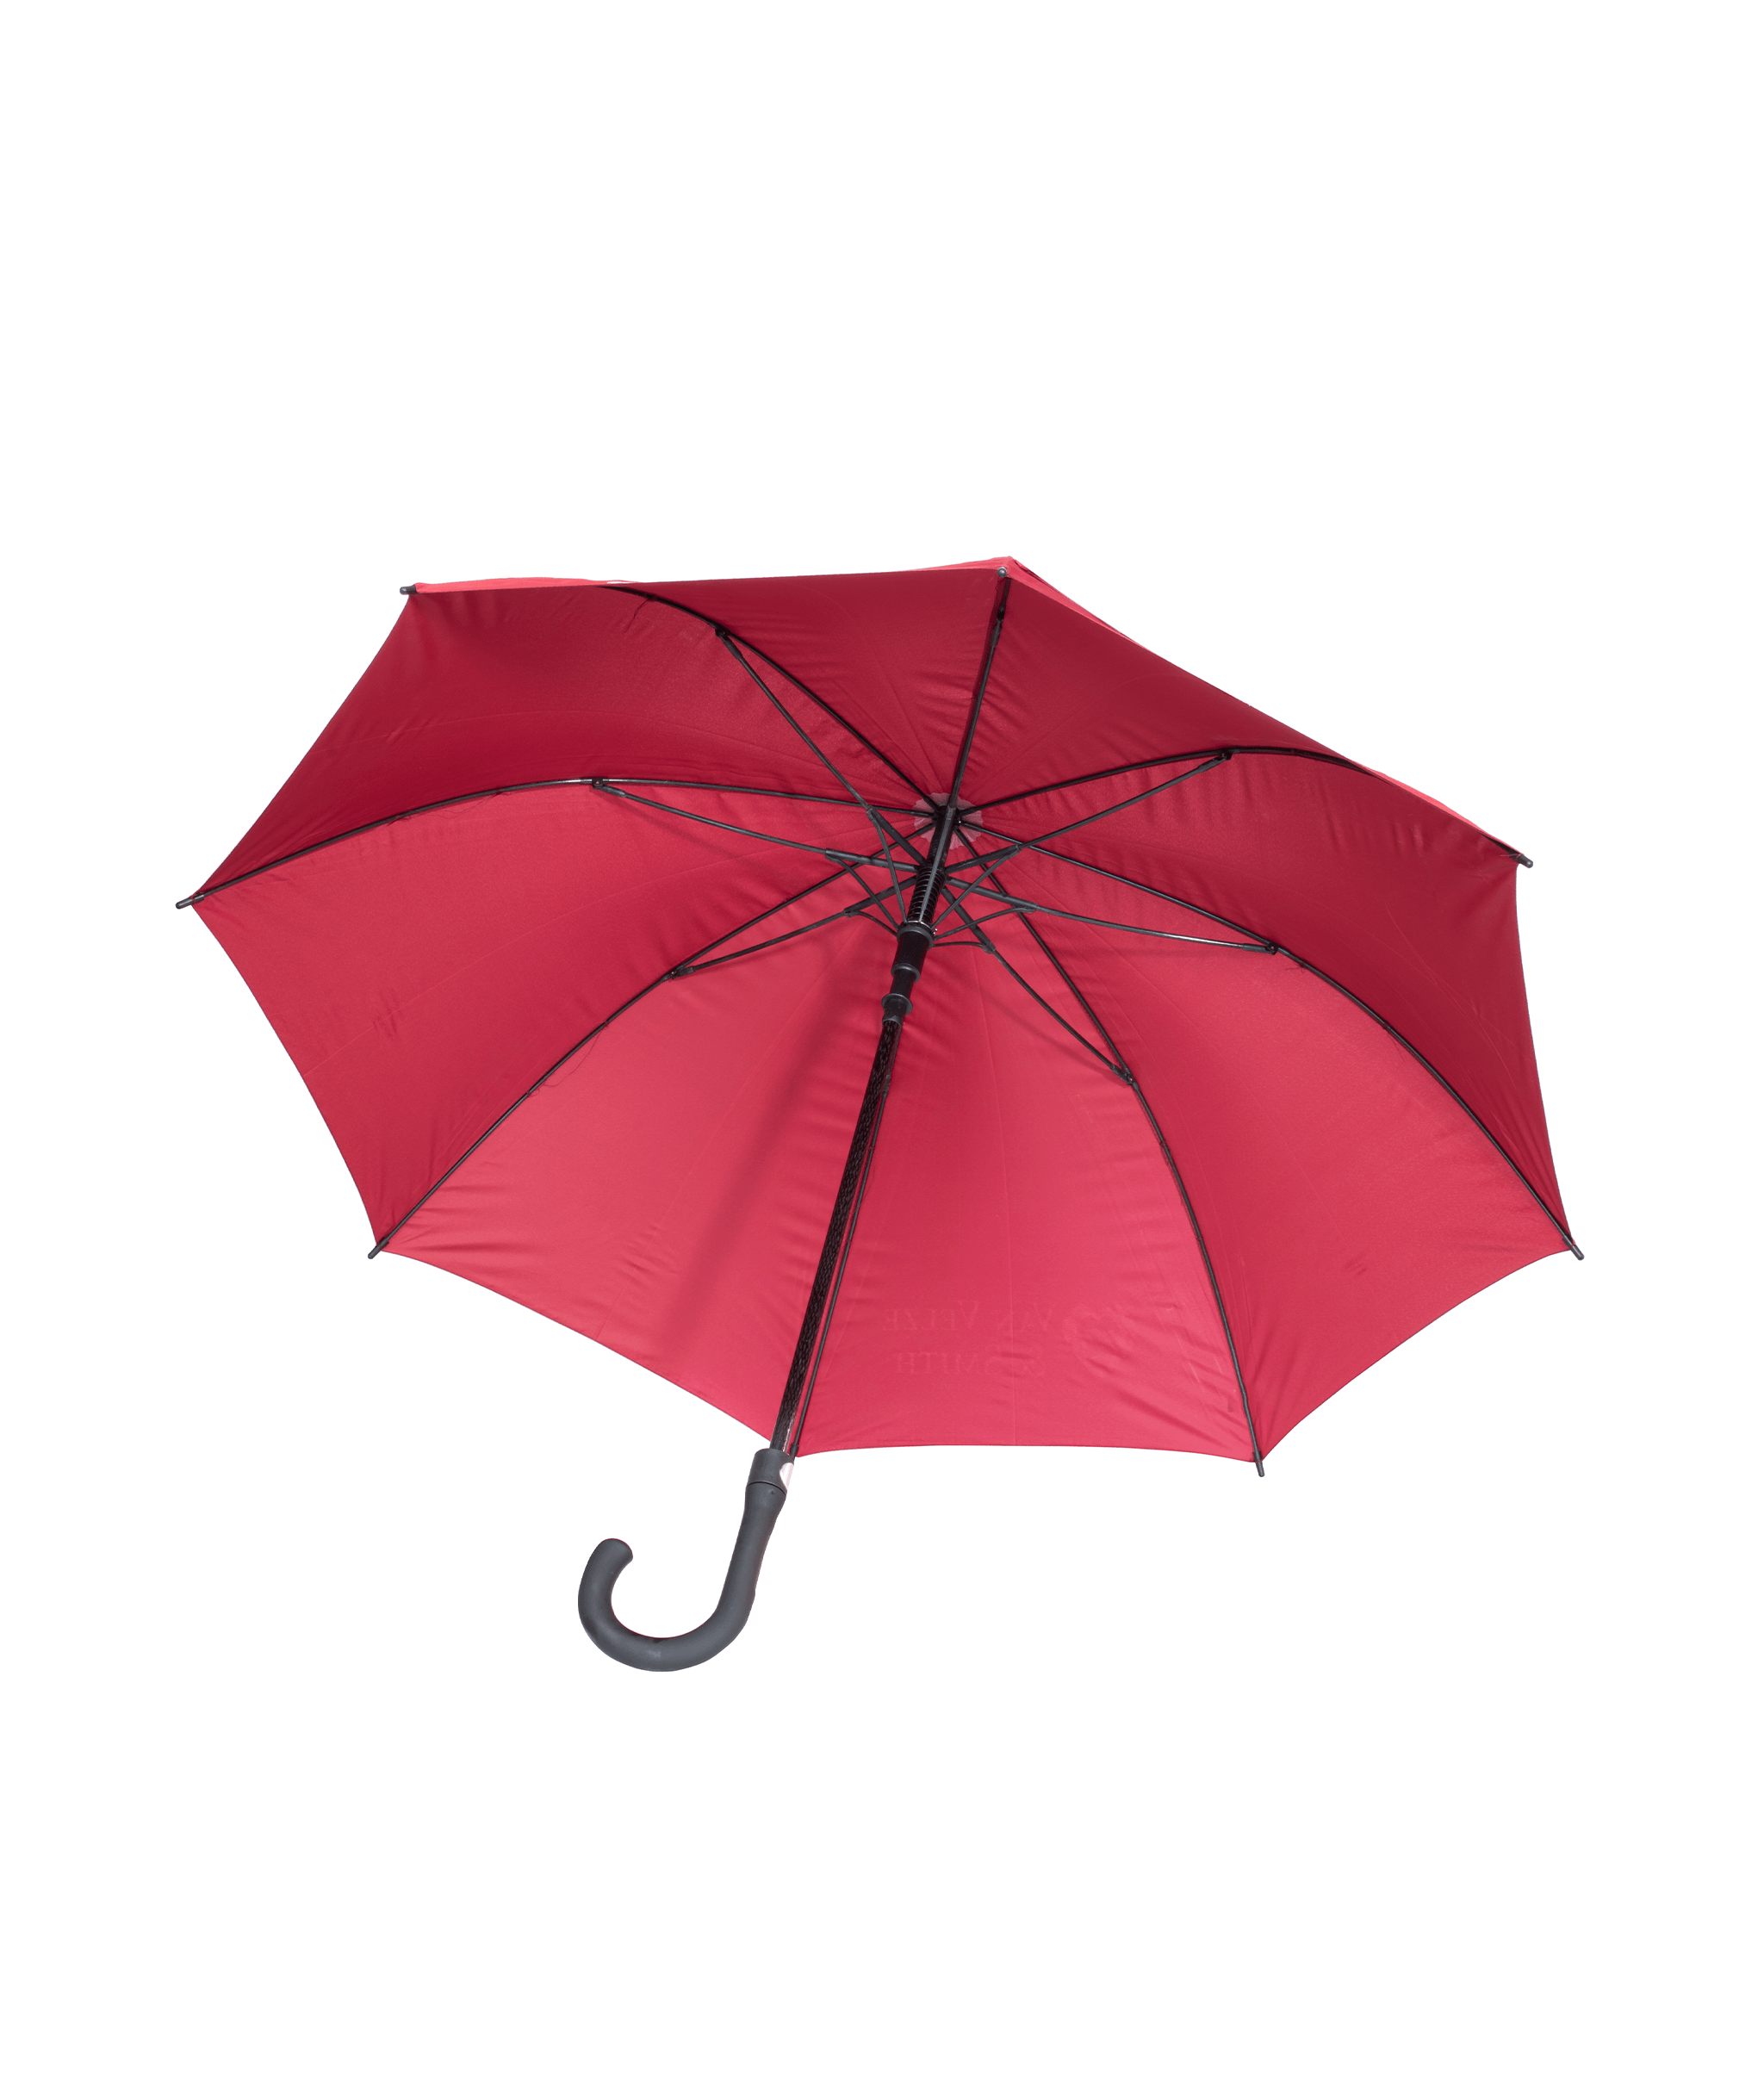 Umbrella - Van Velze & Smith